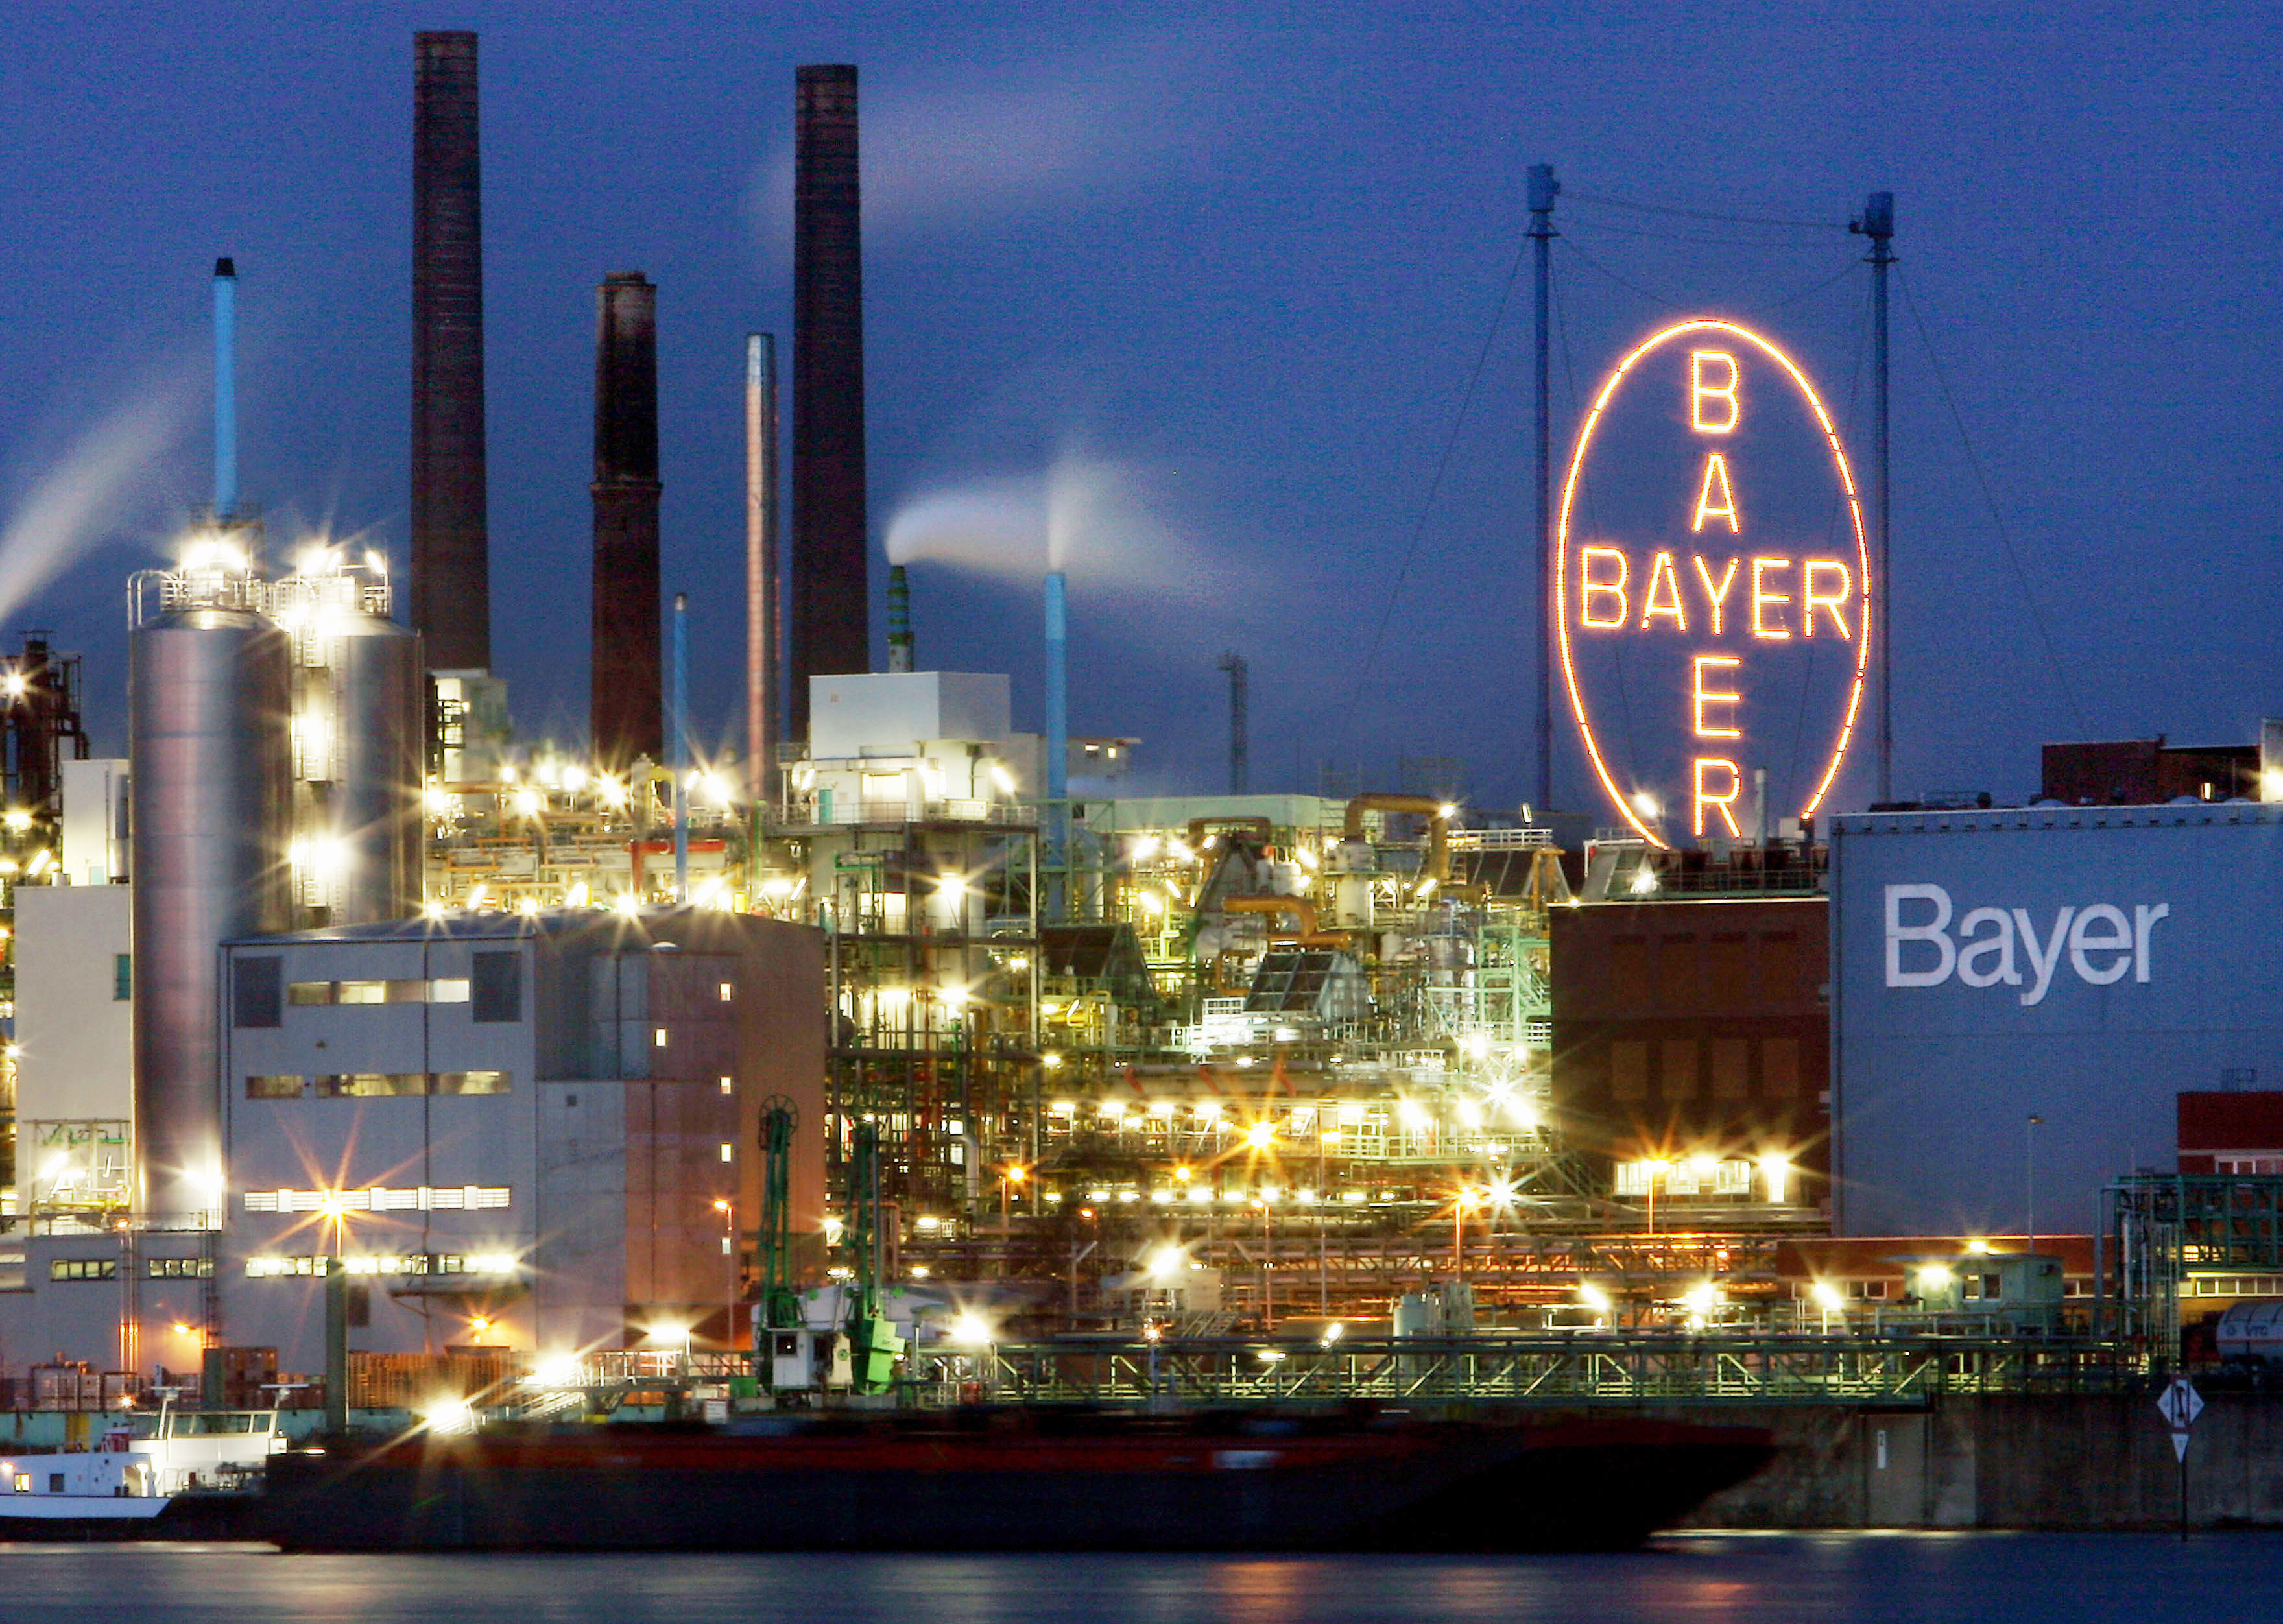 Какая промышленность в германии. Завод Байер в Германии. Промышленность Германии Bayer. Химический завод в Германии. Химическая промышленность ФРГ.